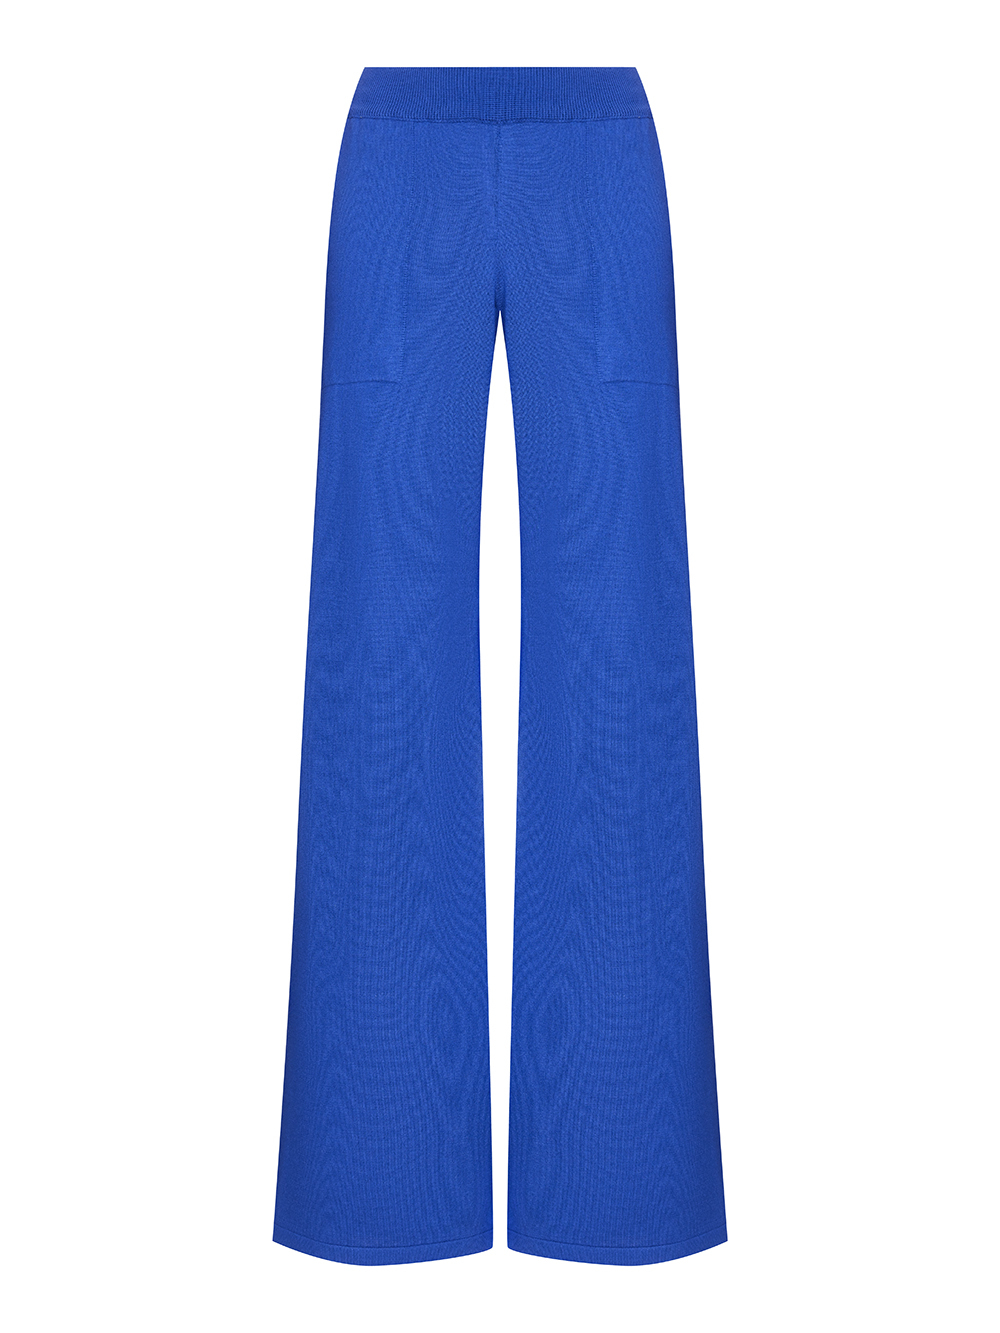 Женские брюки василькового цвета из шелка и кашемира - фото 1